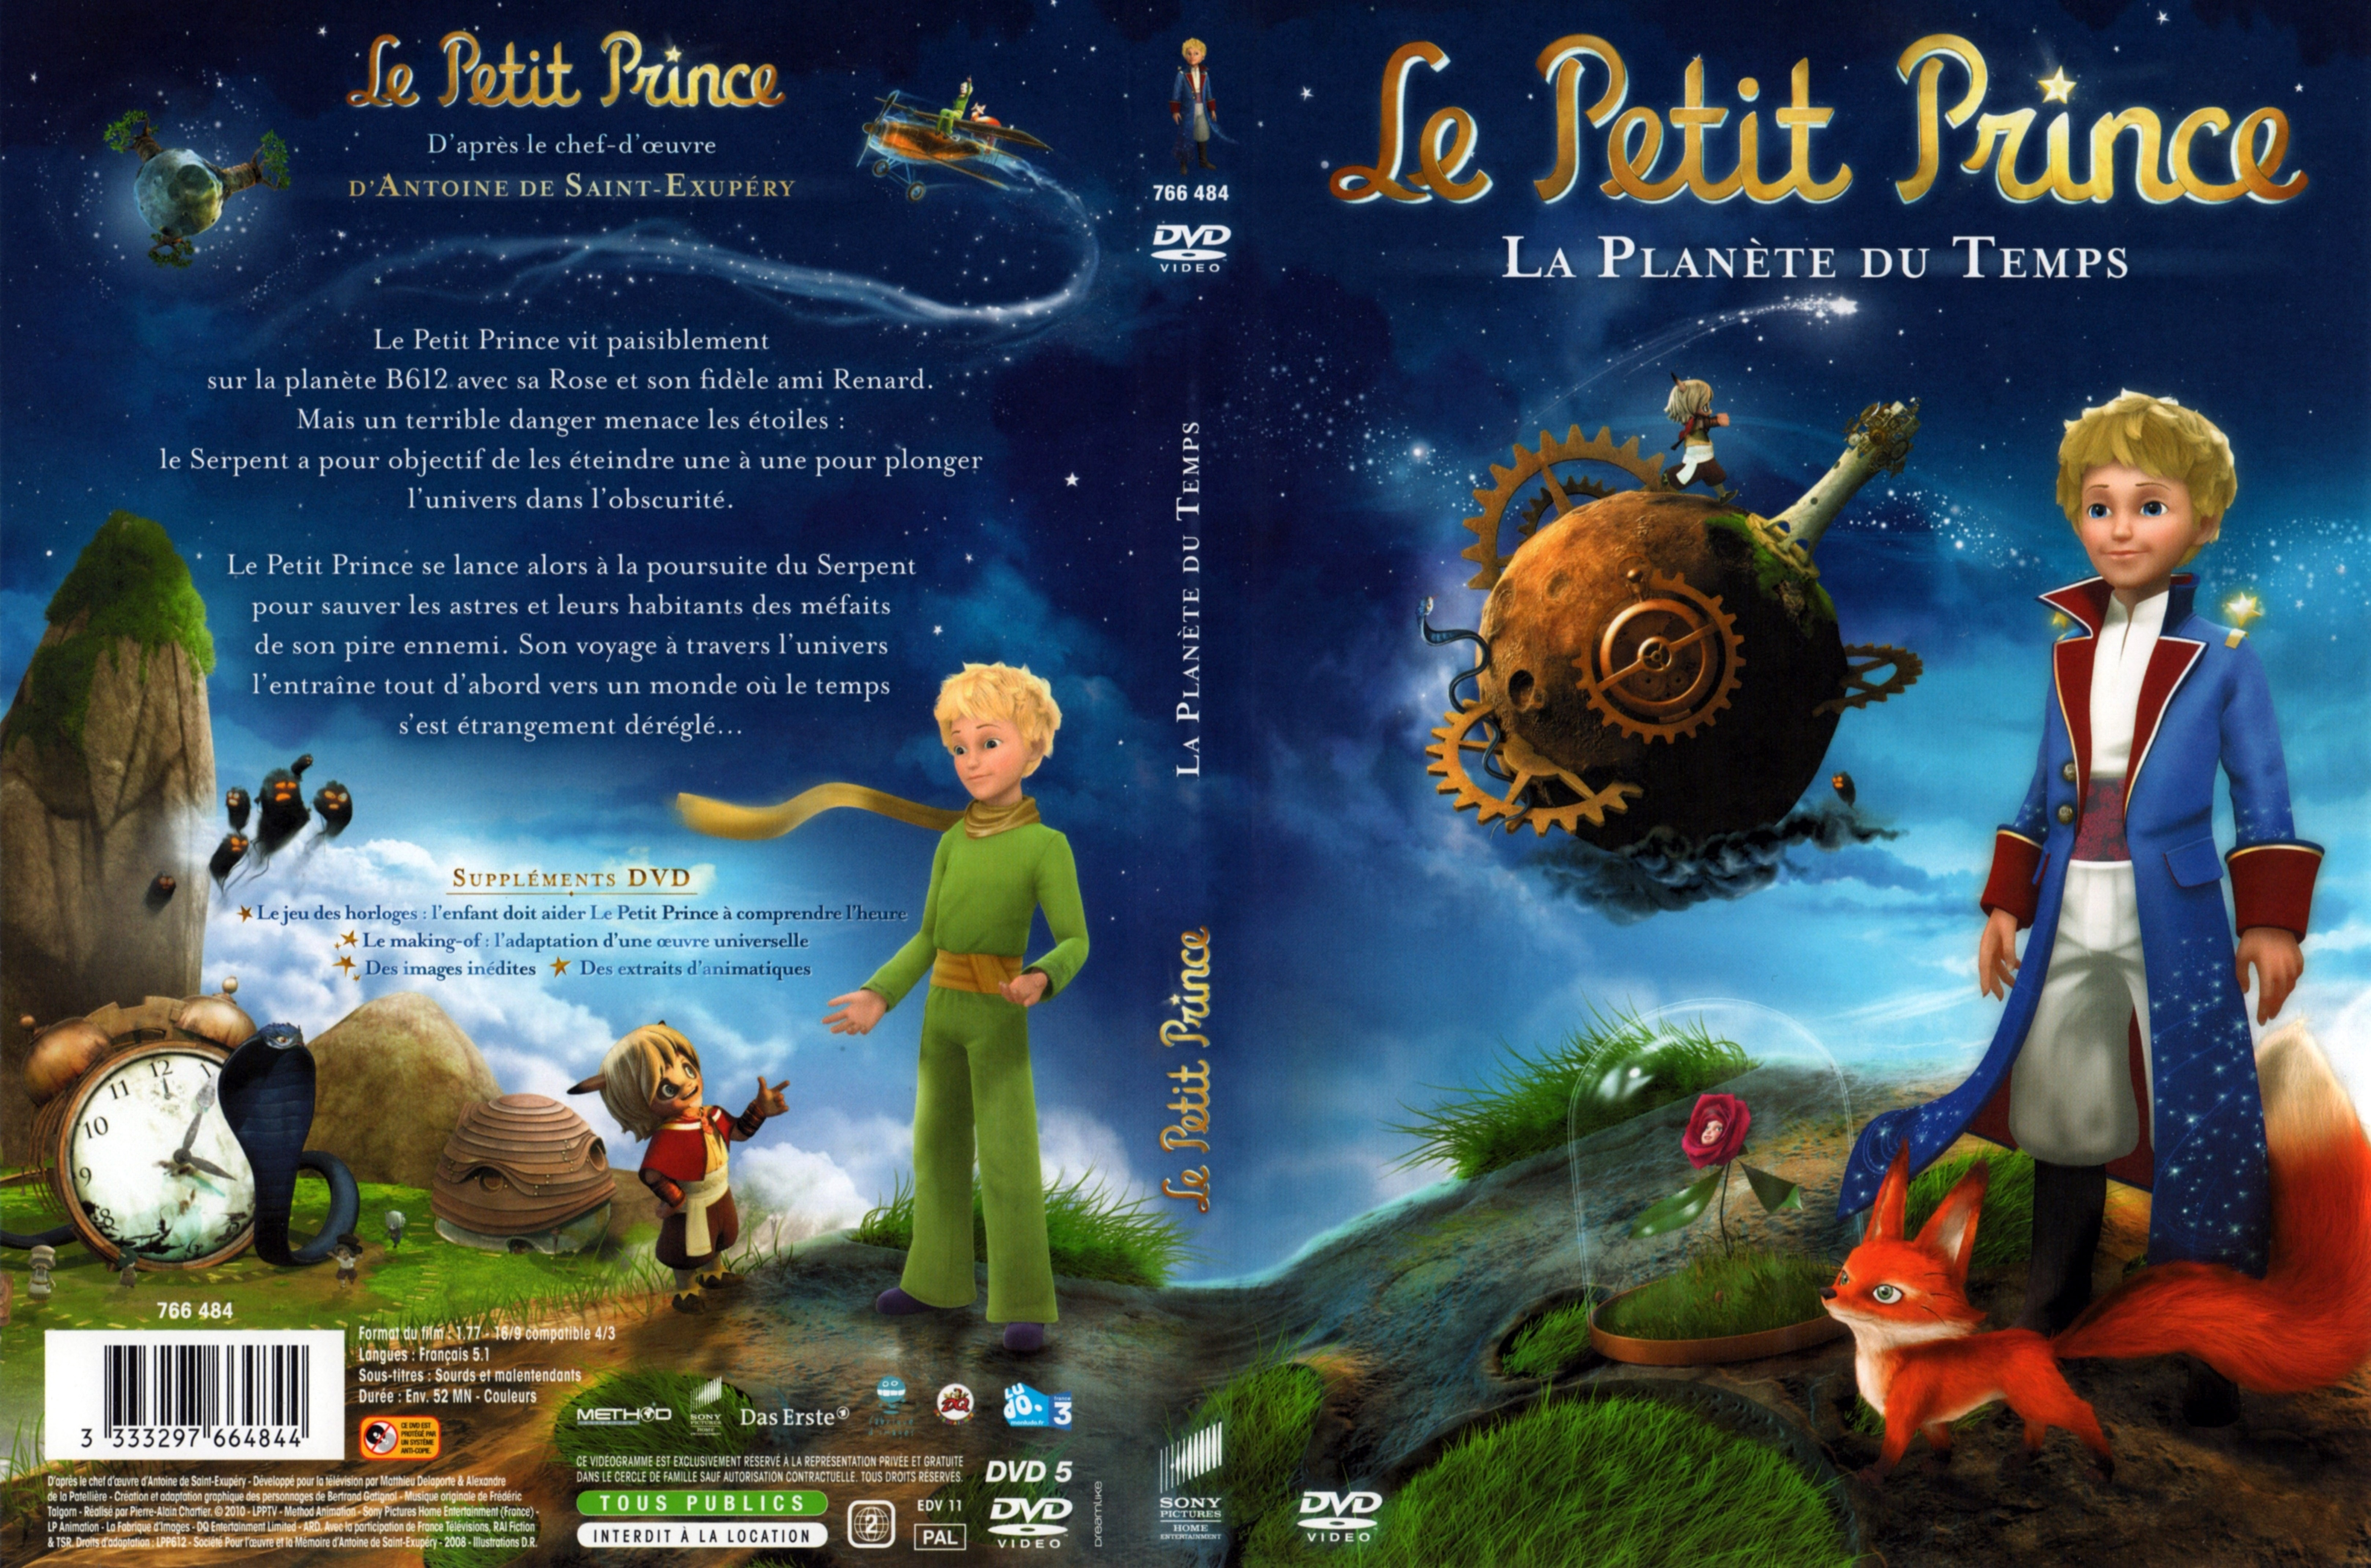 Jaquette DVD Le petit prince (la planete de temps)